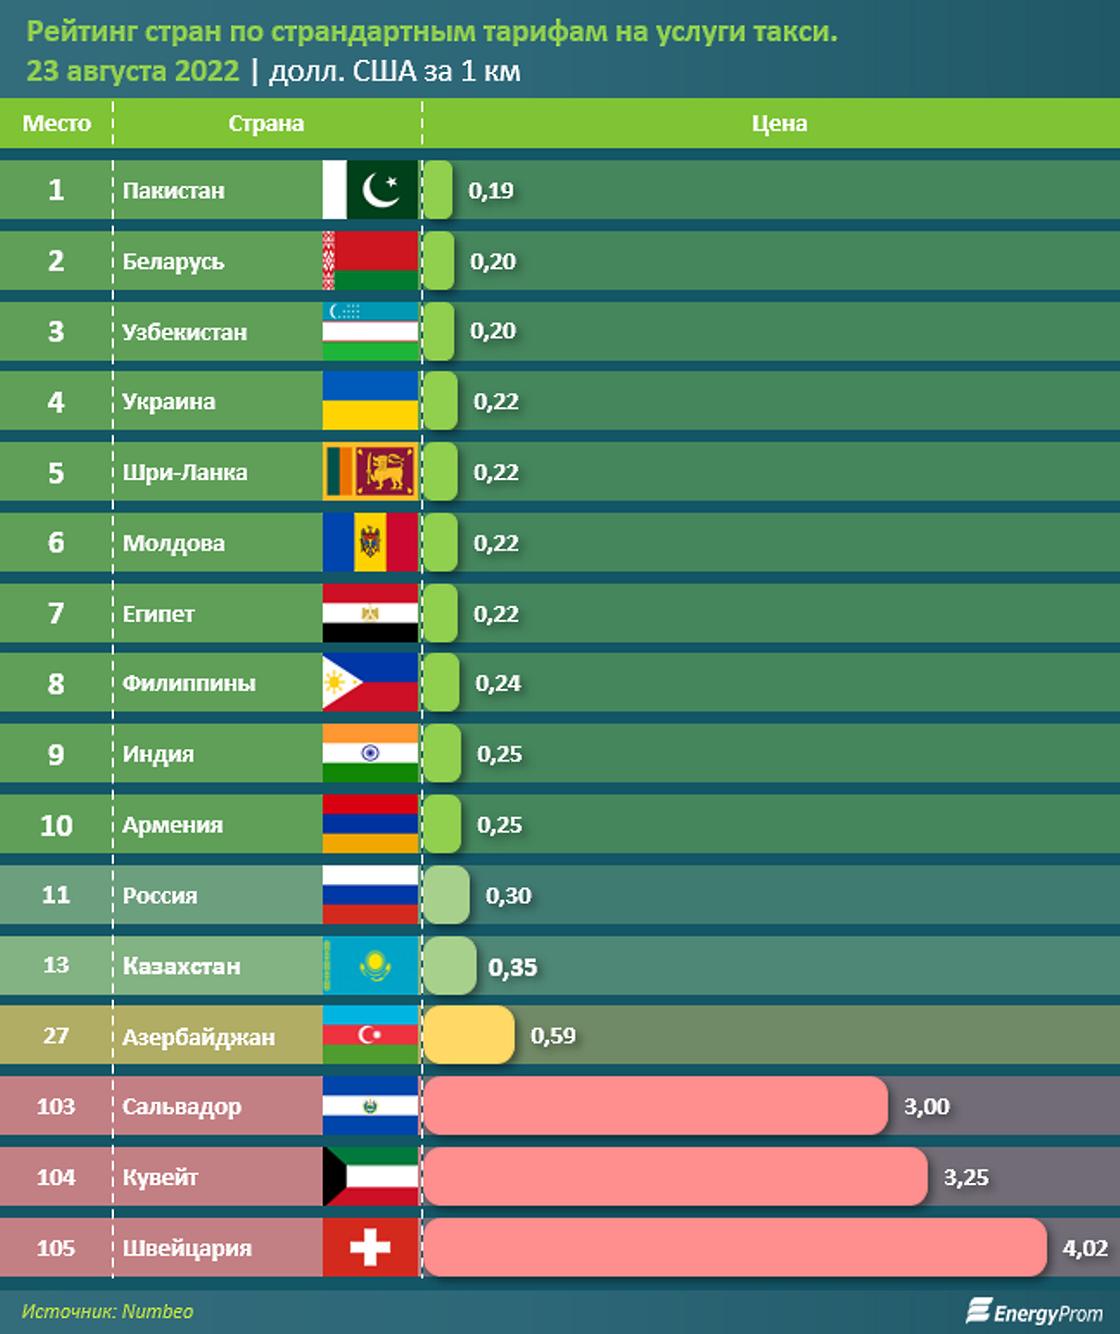 Казахстан занял 13 место в рейтинге стра по стоимости такси.